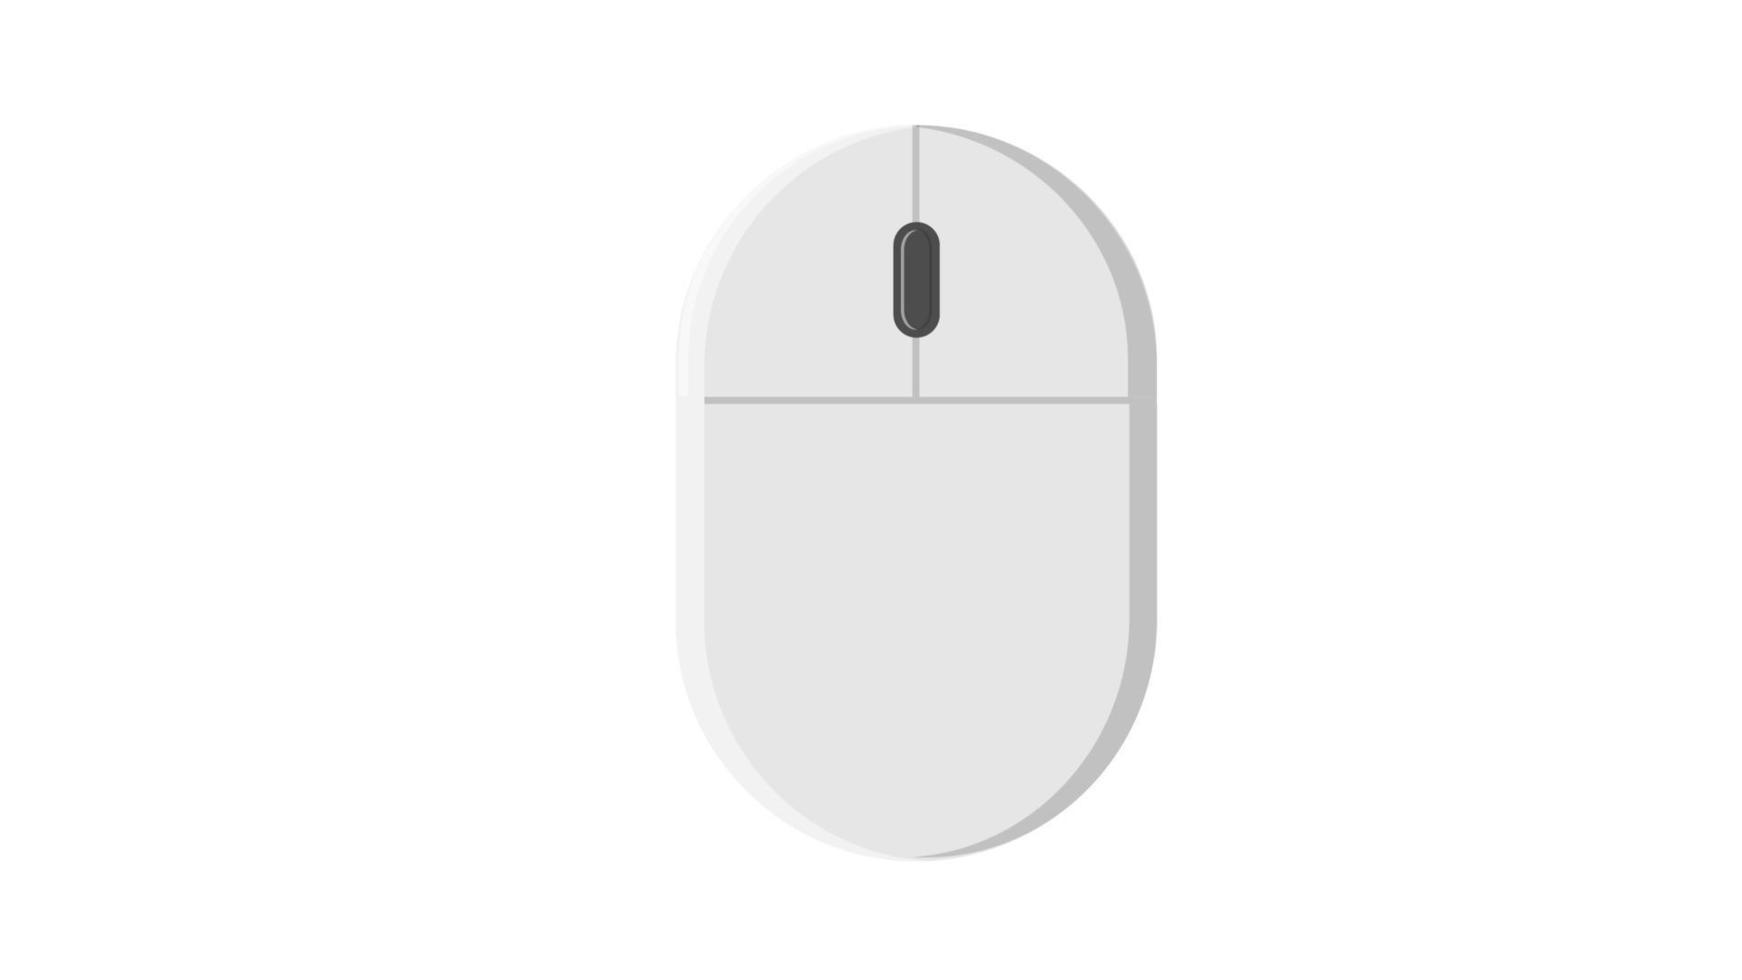 Illustration vectorielle d'une souris d'ordinateur numérique sans fil à icône plate blanche avec boutons et molette sur fond blanc. concept informatique technologies numériques vecteur